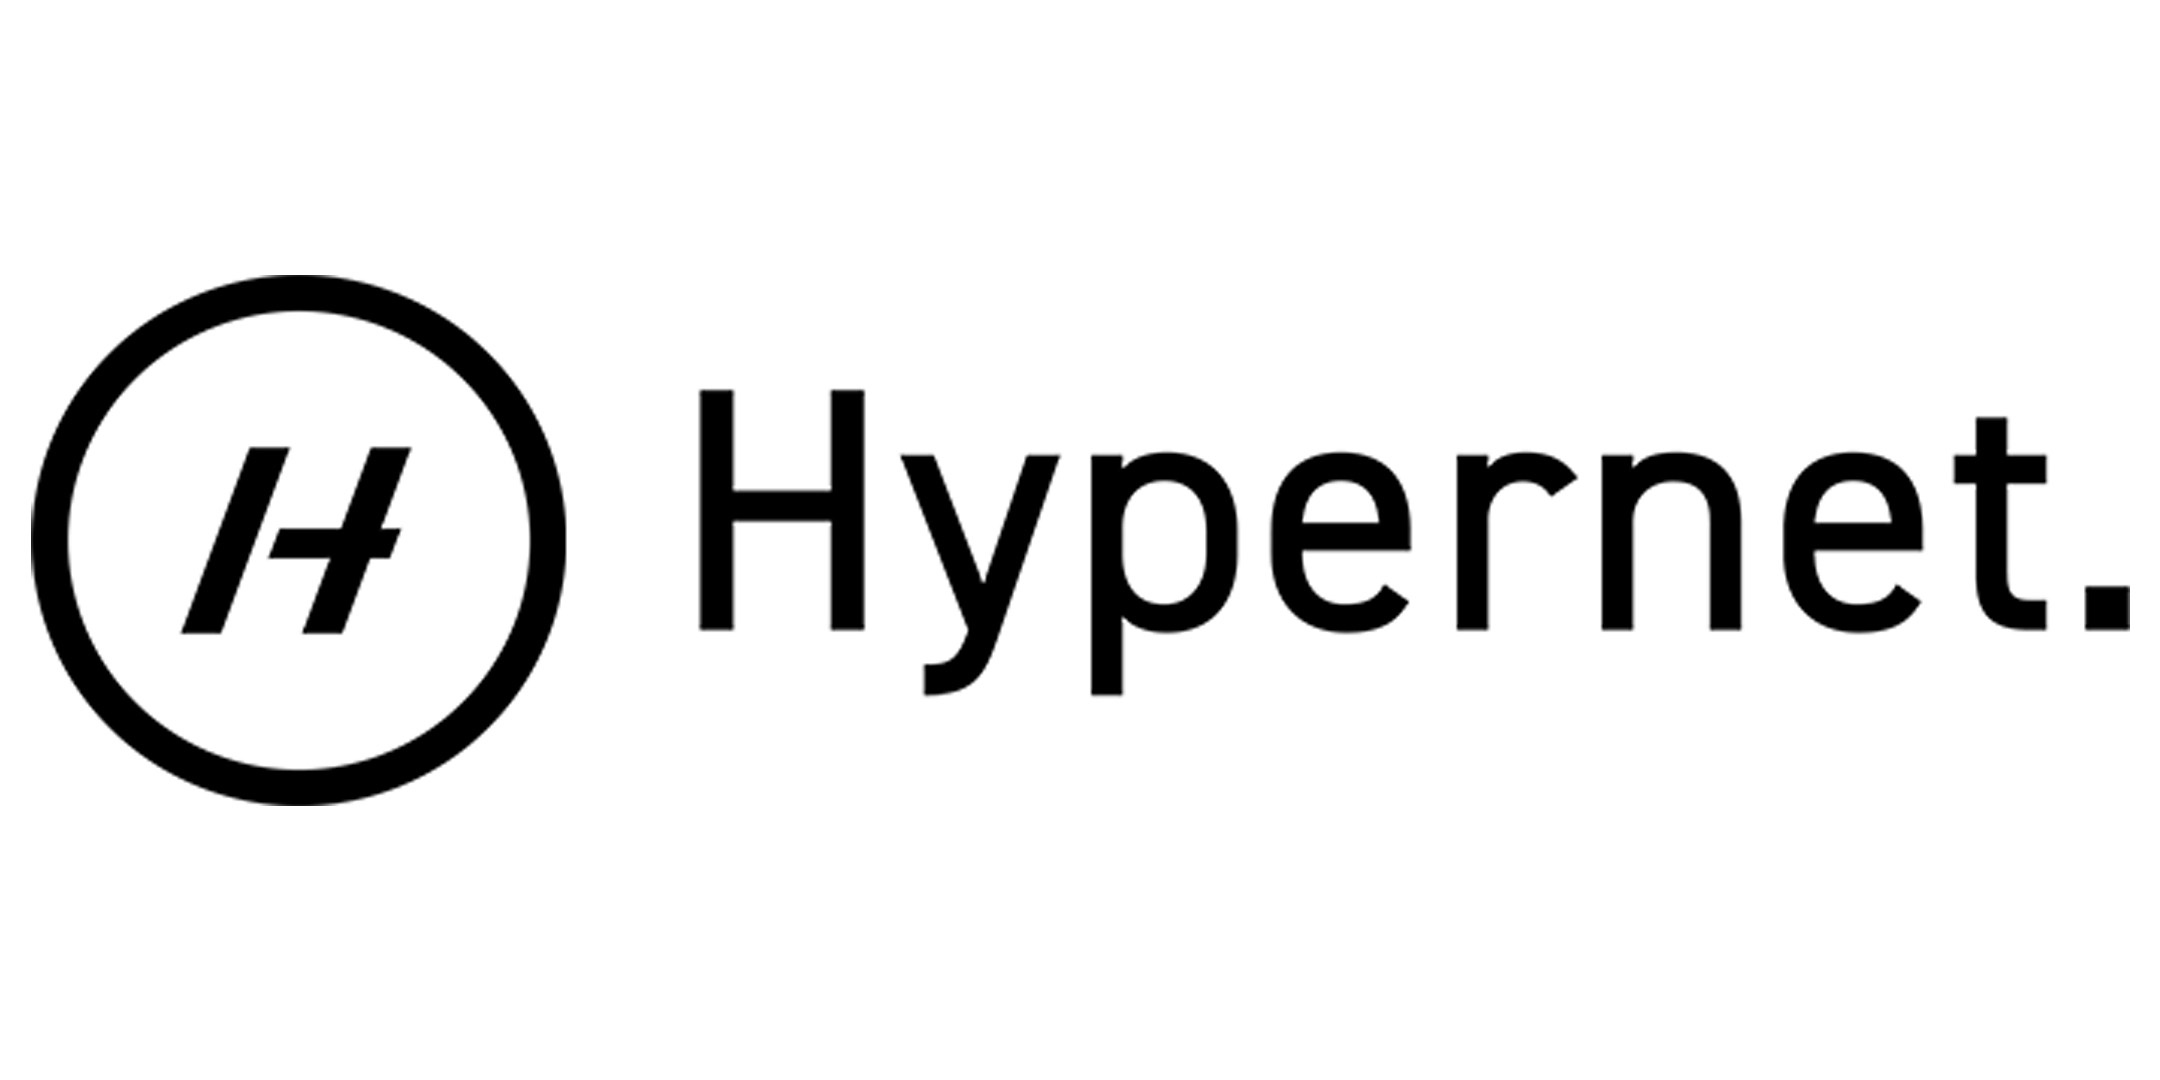 Hypernet